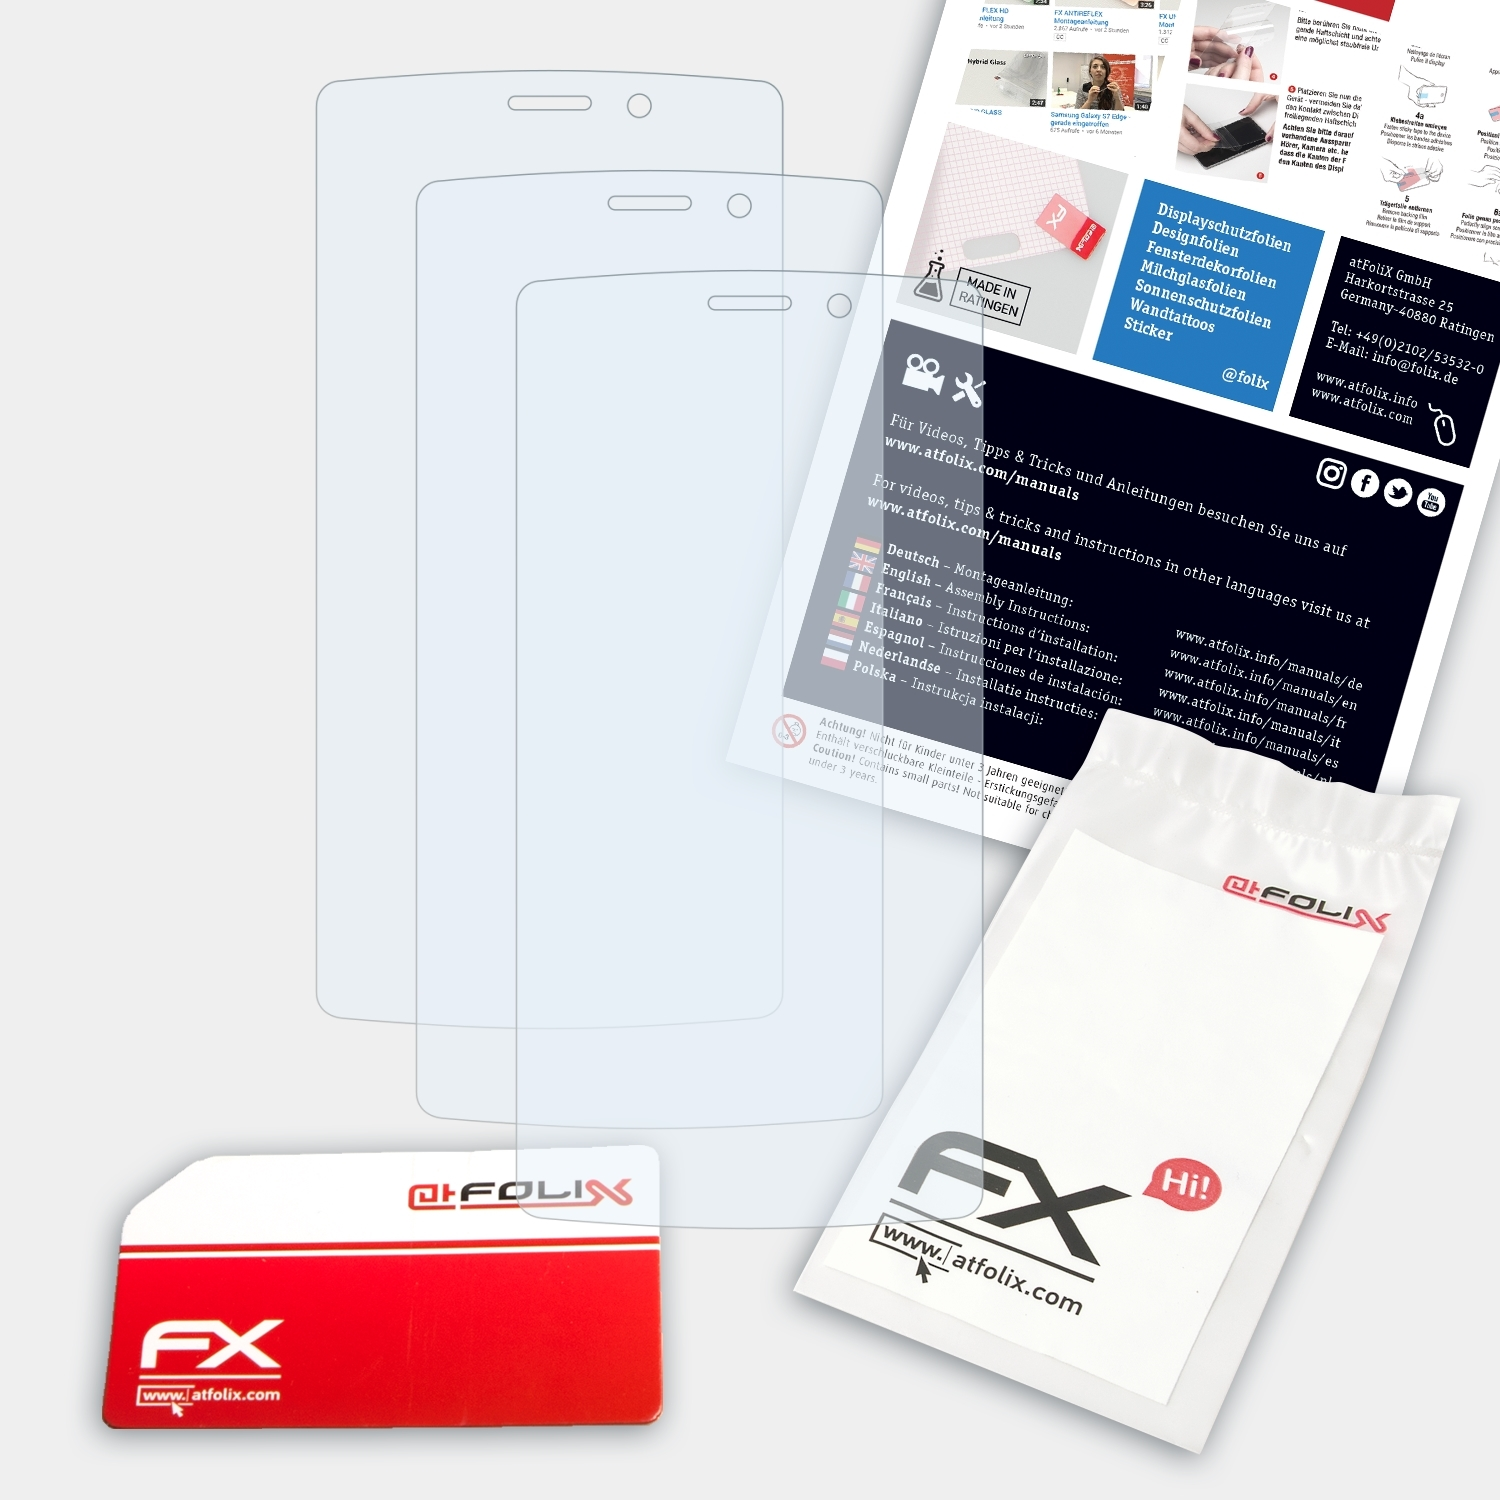 ATFOLIX Neffos 3x Max) Displayschutz(für TP-Link C5 FX-Clear